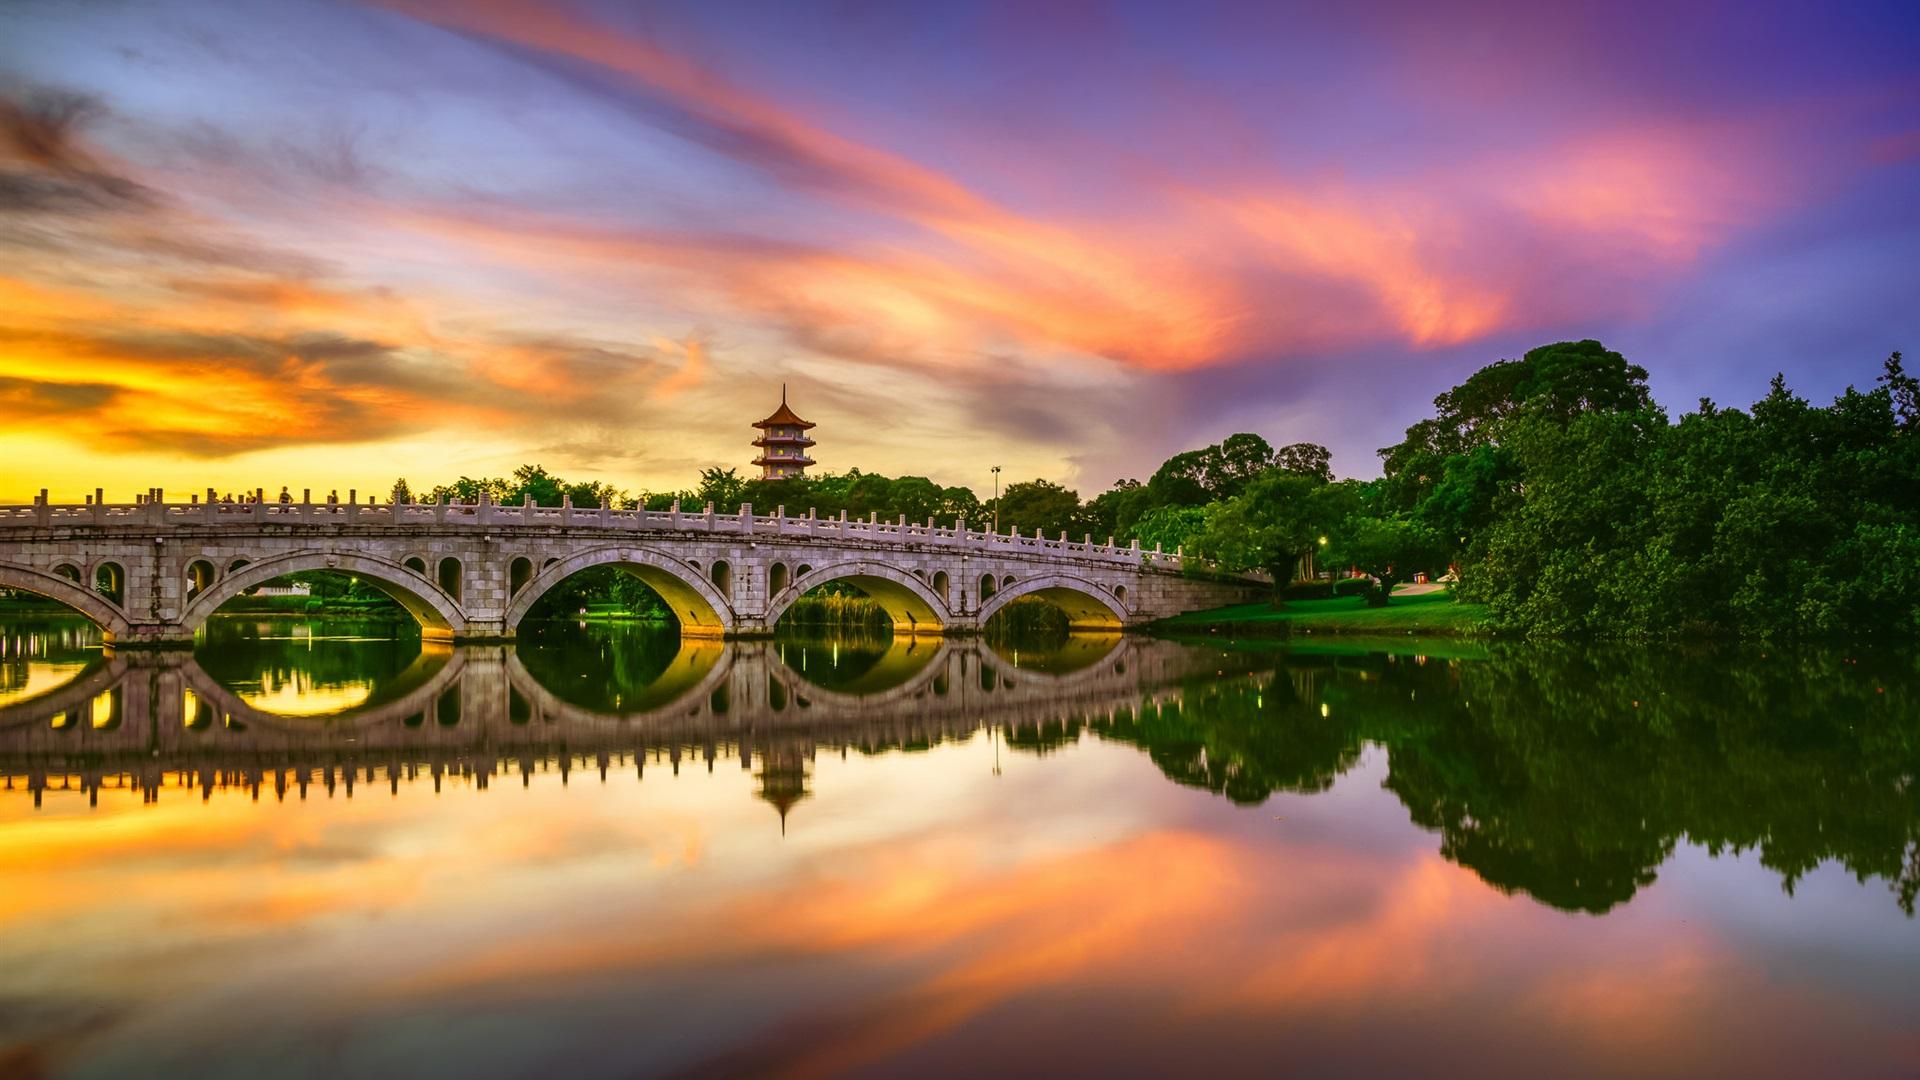 Wallpaper Chinese Garden, lake, bridge, water reflection, clouds